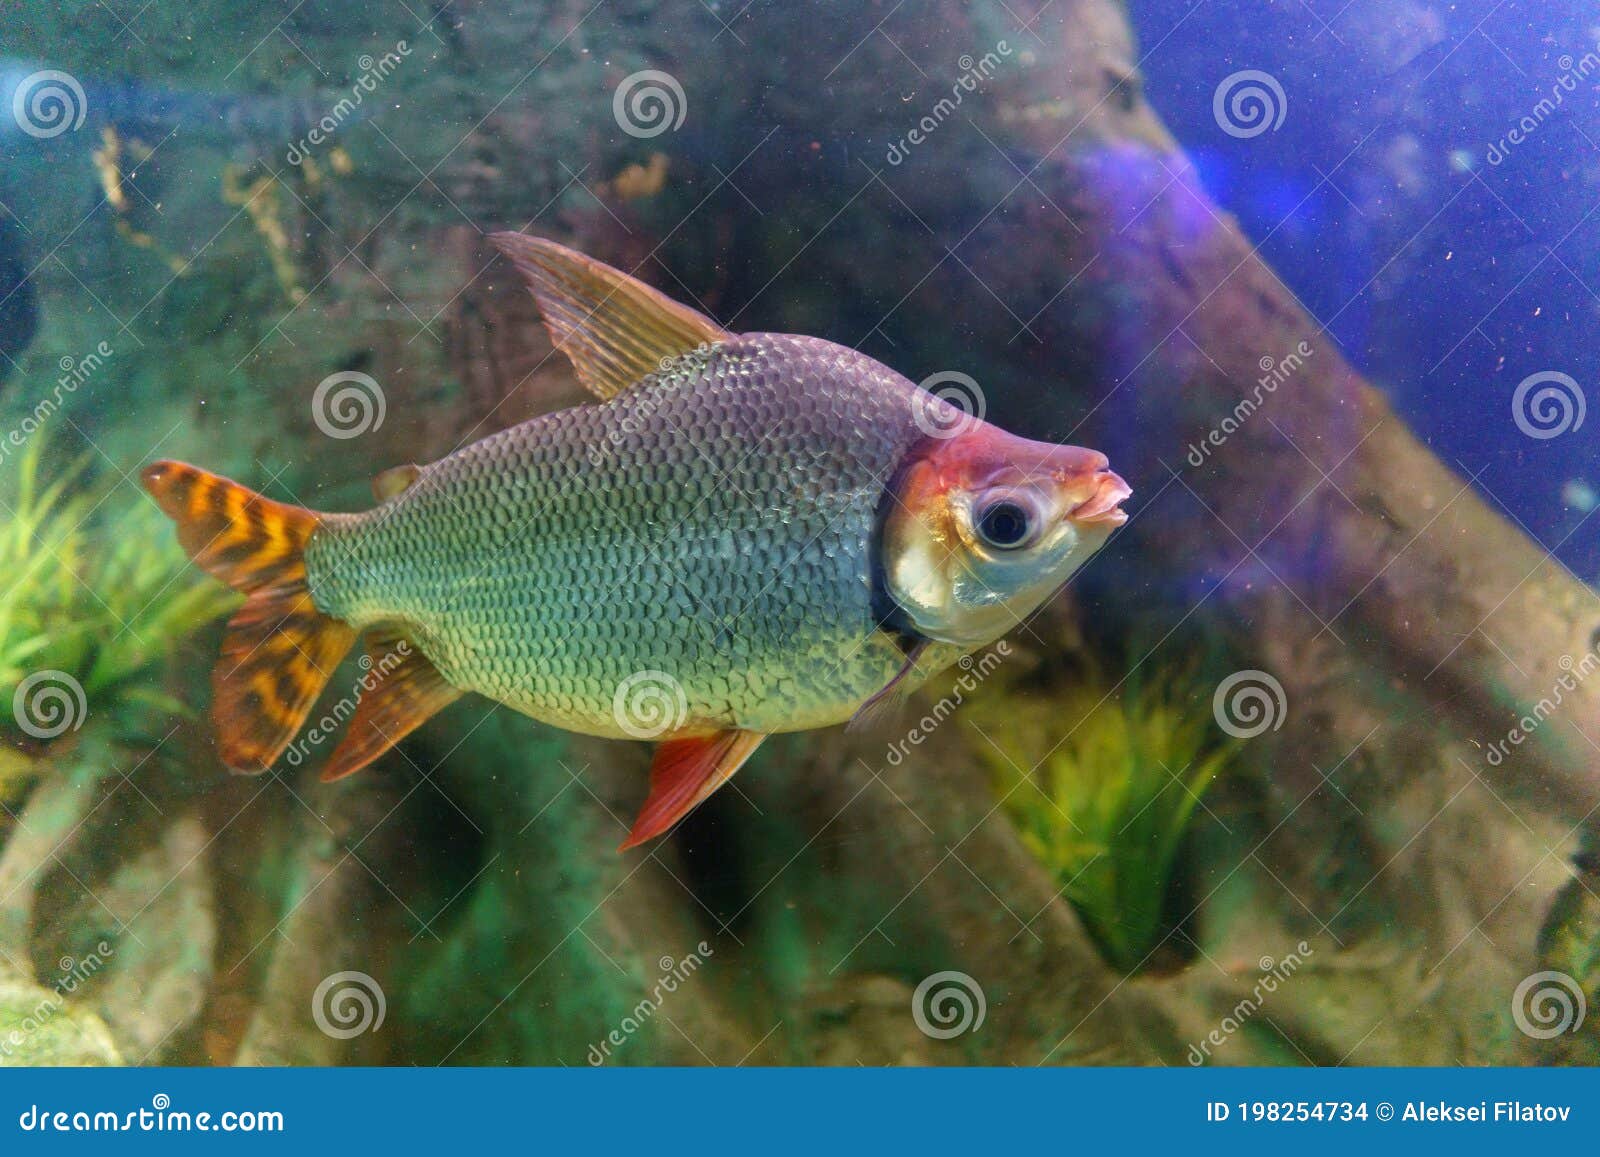 distichum losasso, distichodus long-nosed distichodus lusosso. fish in the aquarium. selective focus